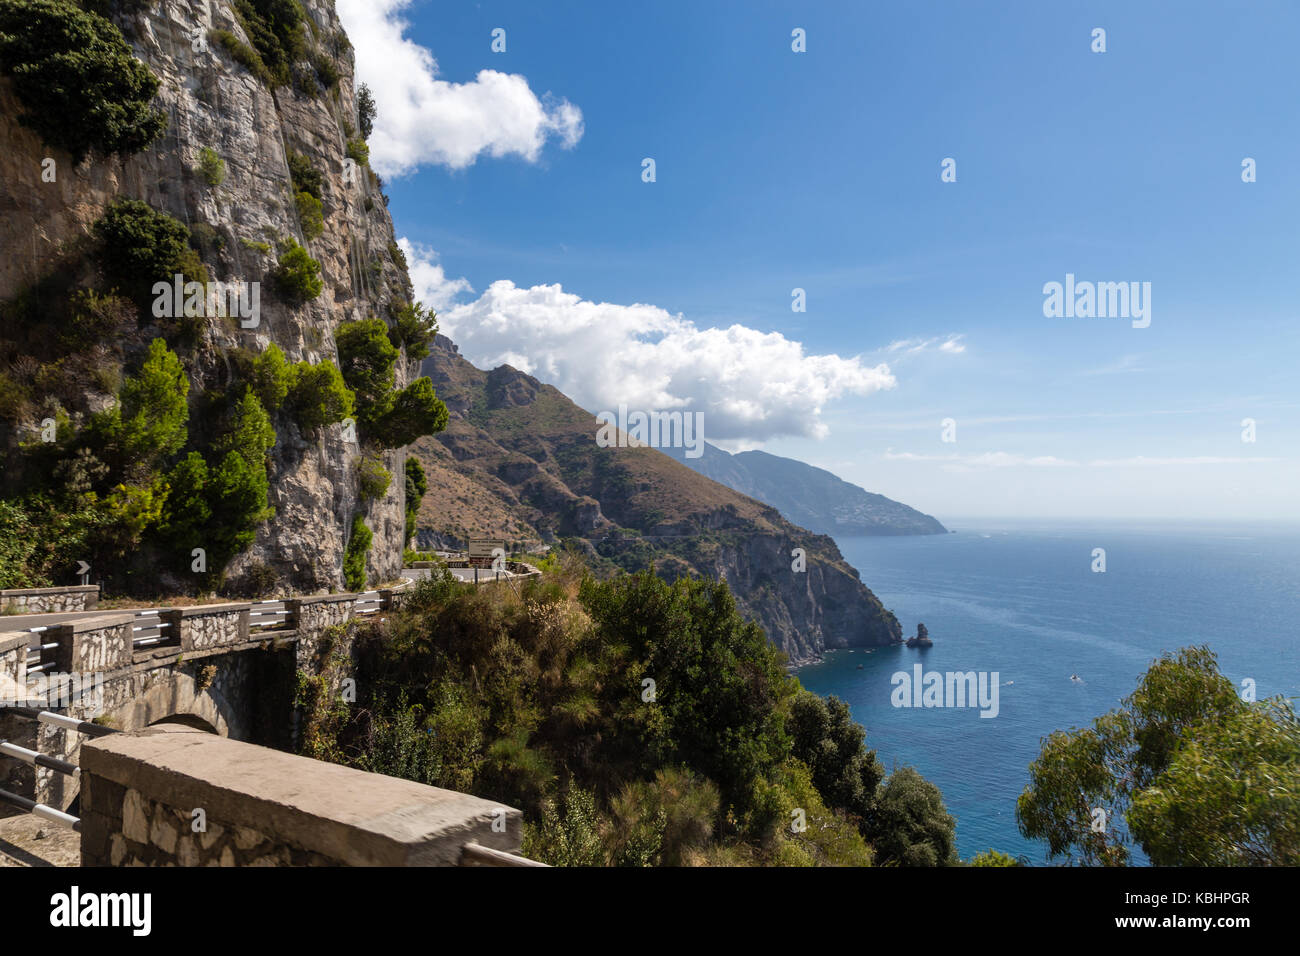 Costa Amalfitana, Italy. Europe. Stock Photo